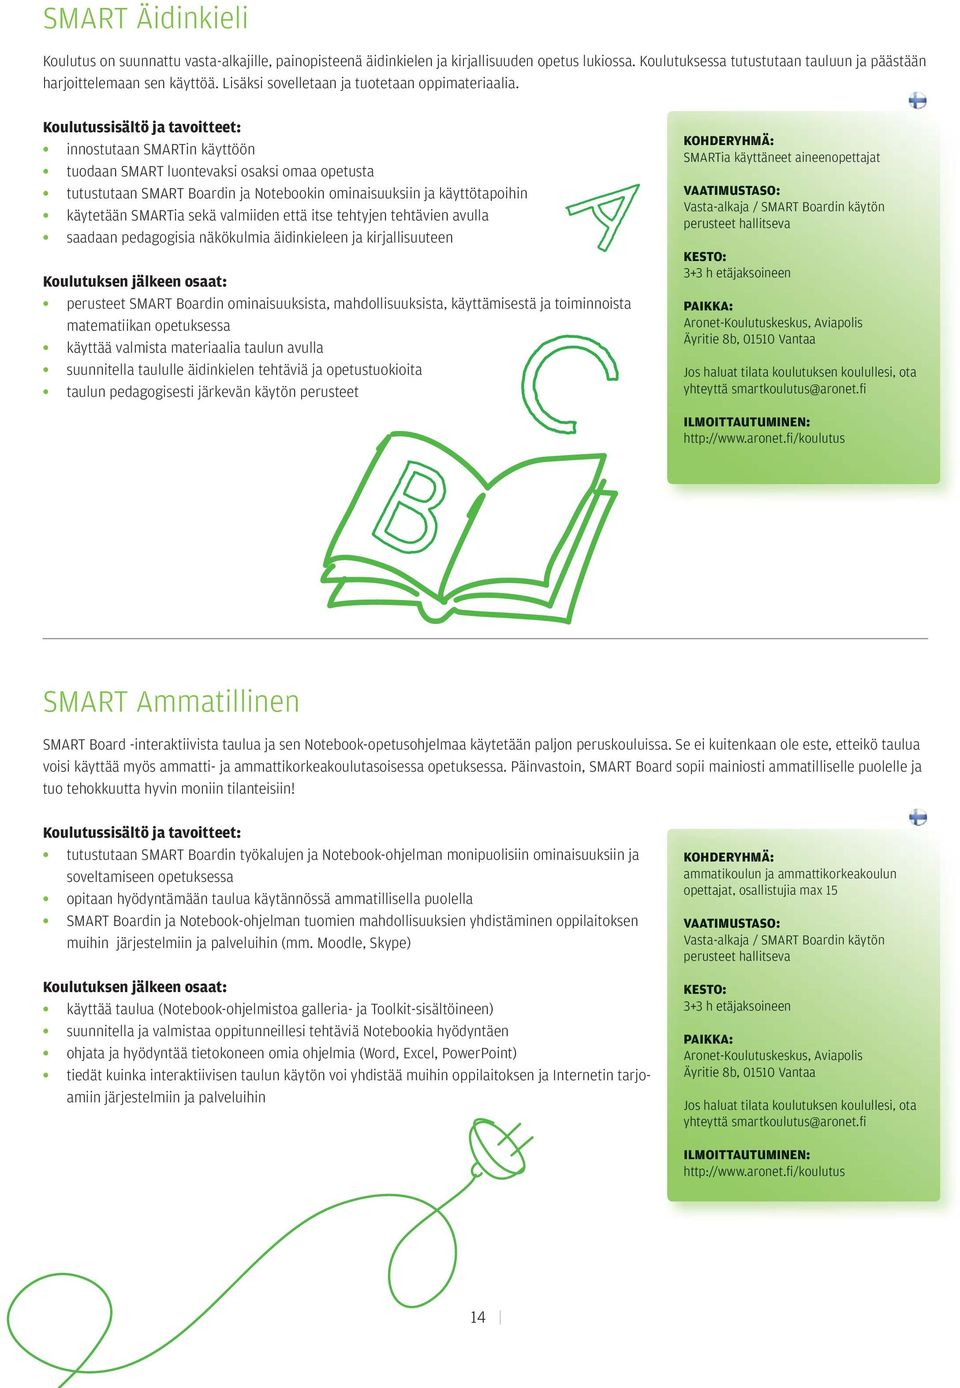 innostutaan SMARTin käyttöön tuodaan SMART luontevaksi osaksi omaa opetta tuttutaan SMART Boardin ja Notebookin ominauuksiin ja käyttötapoihin käytetään SMARTia sekä valmiiden että itse tehtyjen